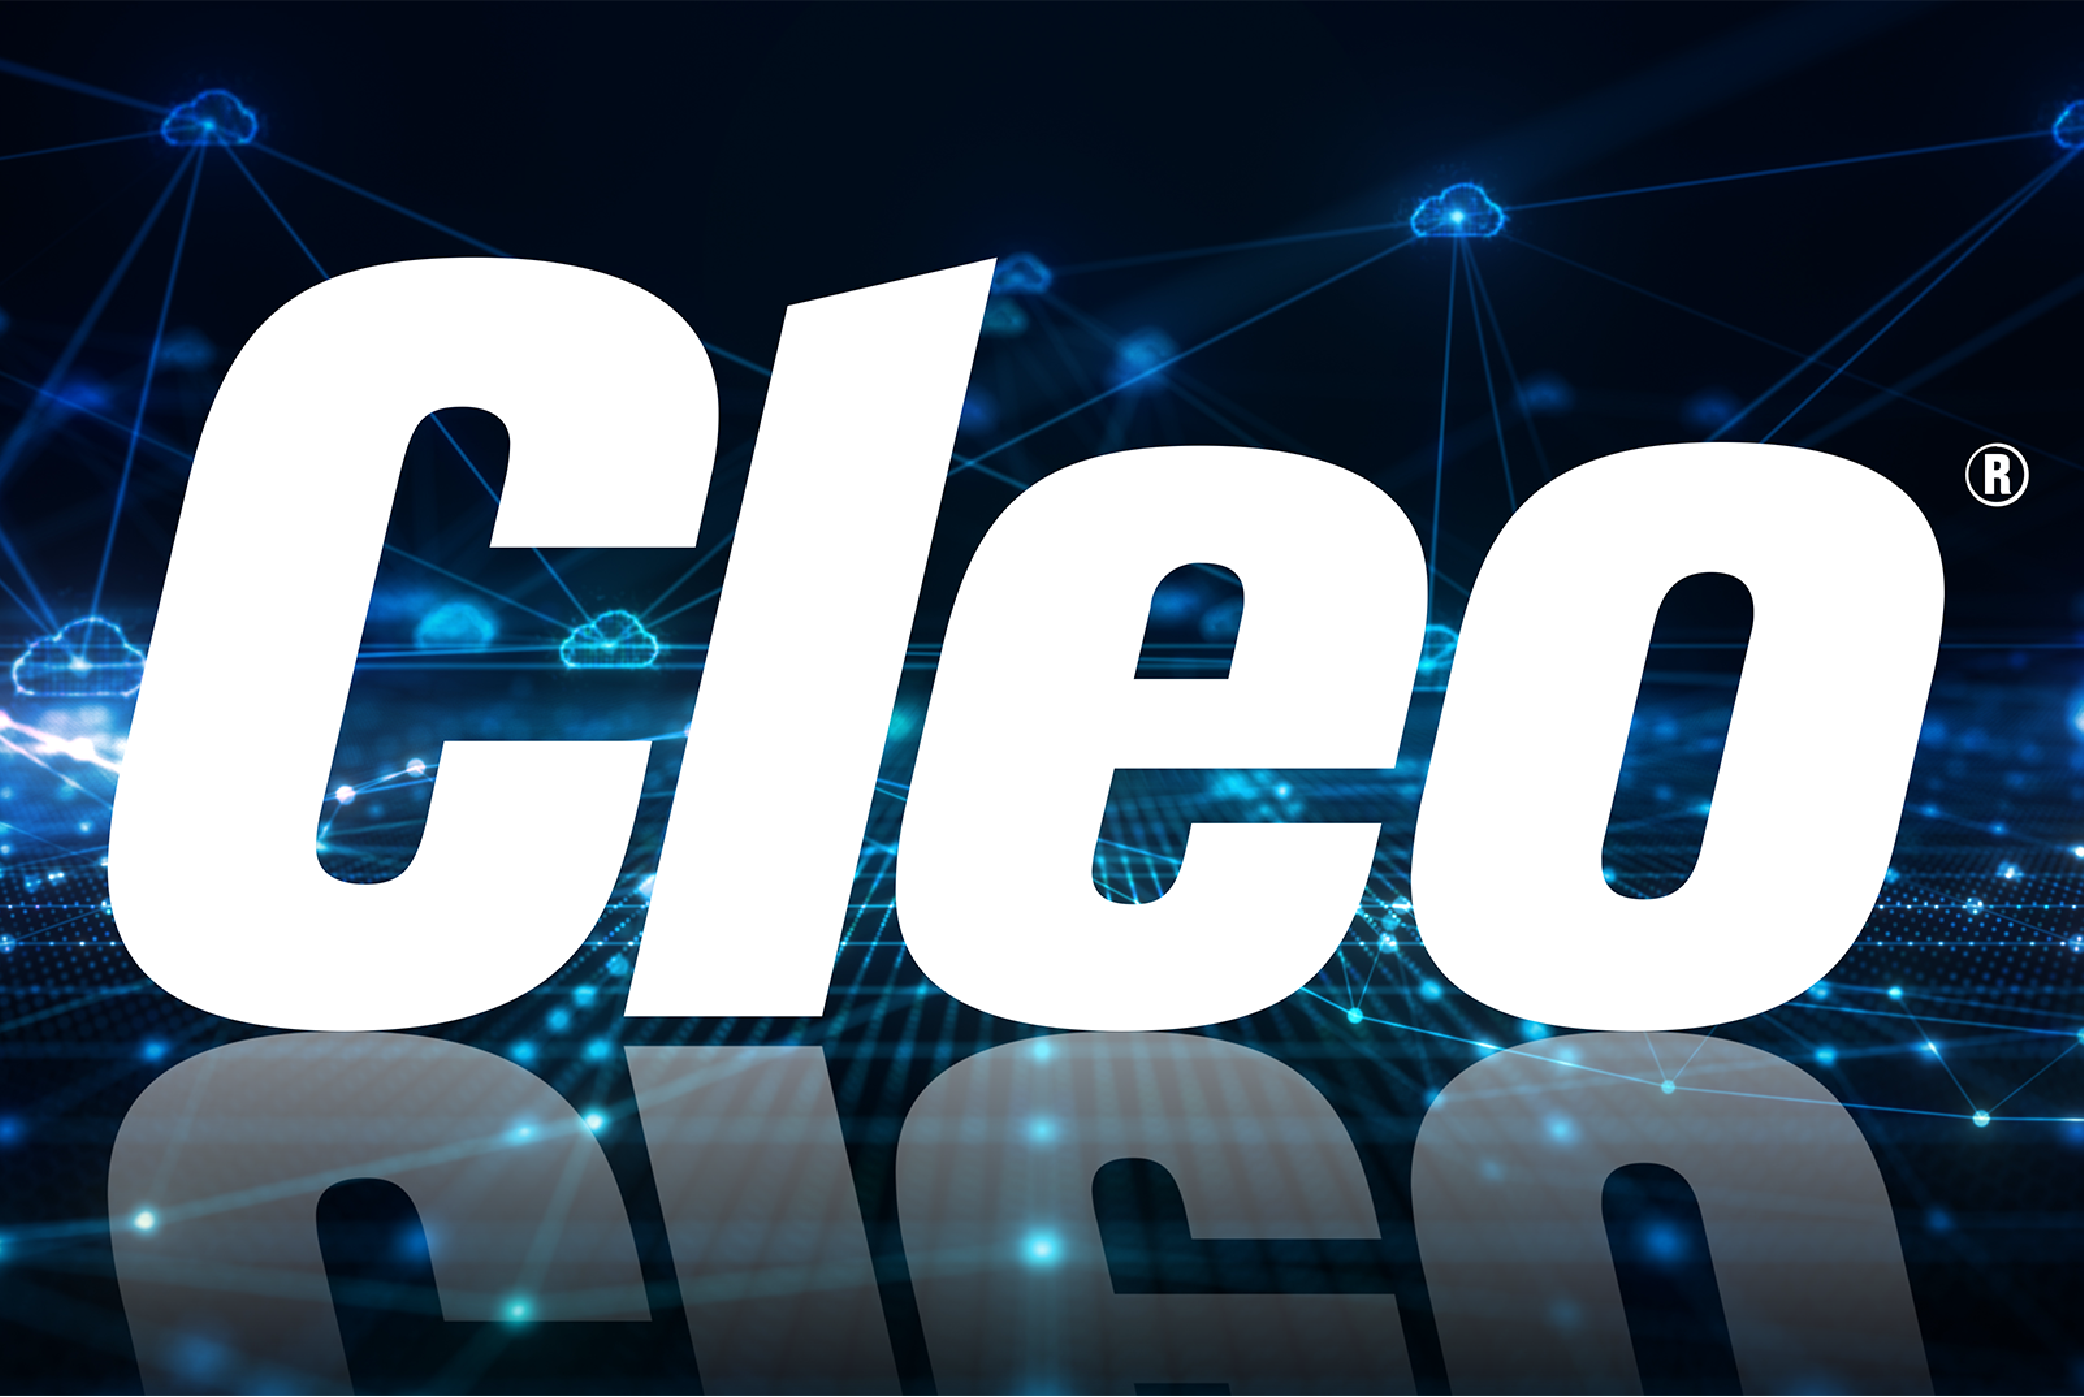 Cleo-logo